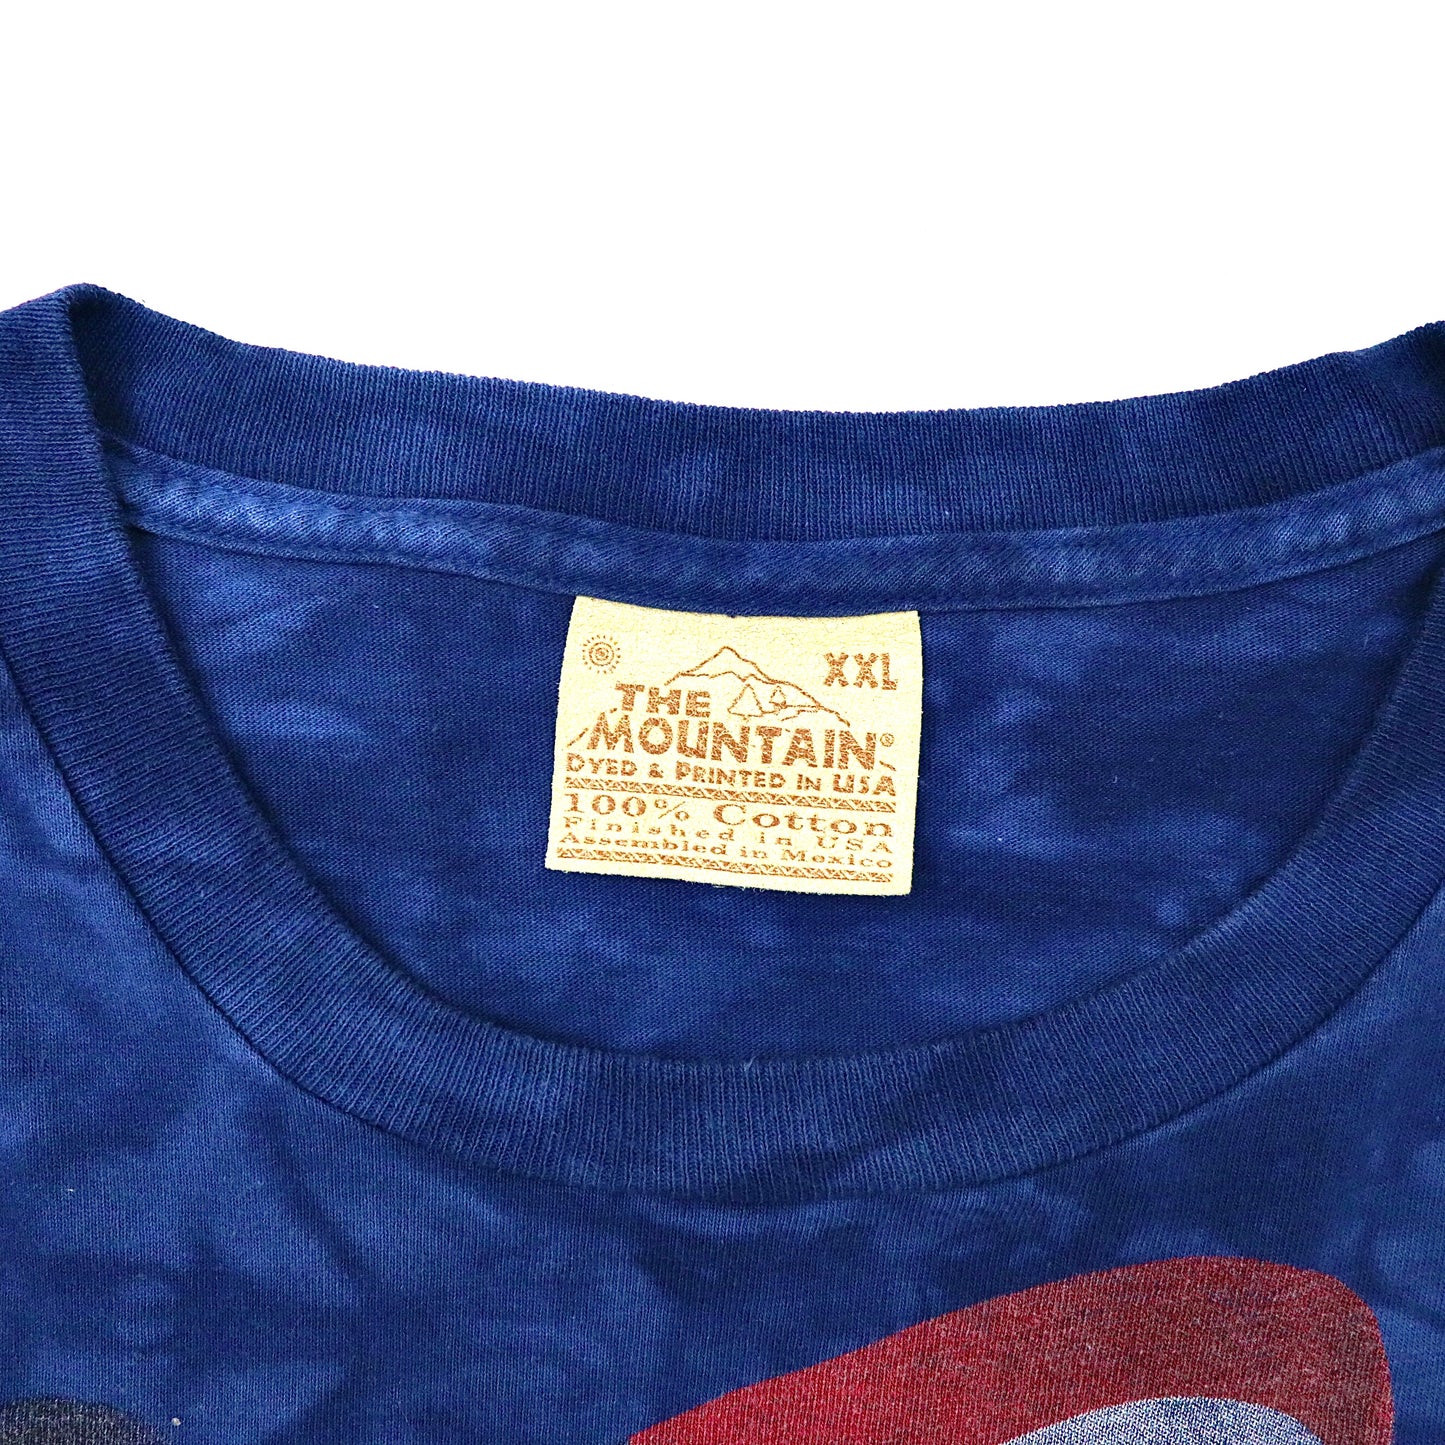 THE MOUNTAIN ビッグサイズ ロングスリーブTシャツ XXL ネイビー タイダイ コットン 星条旗 ワシ 90年代 メキシコ製